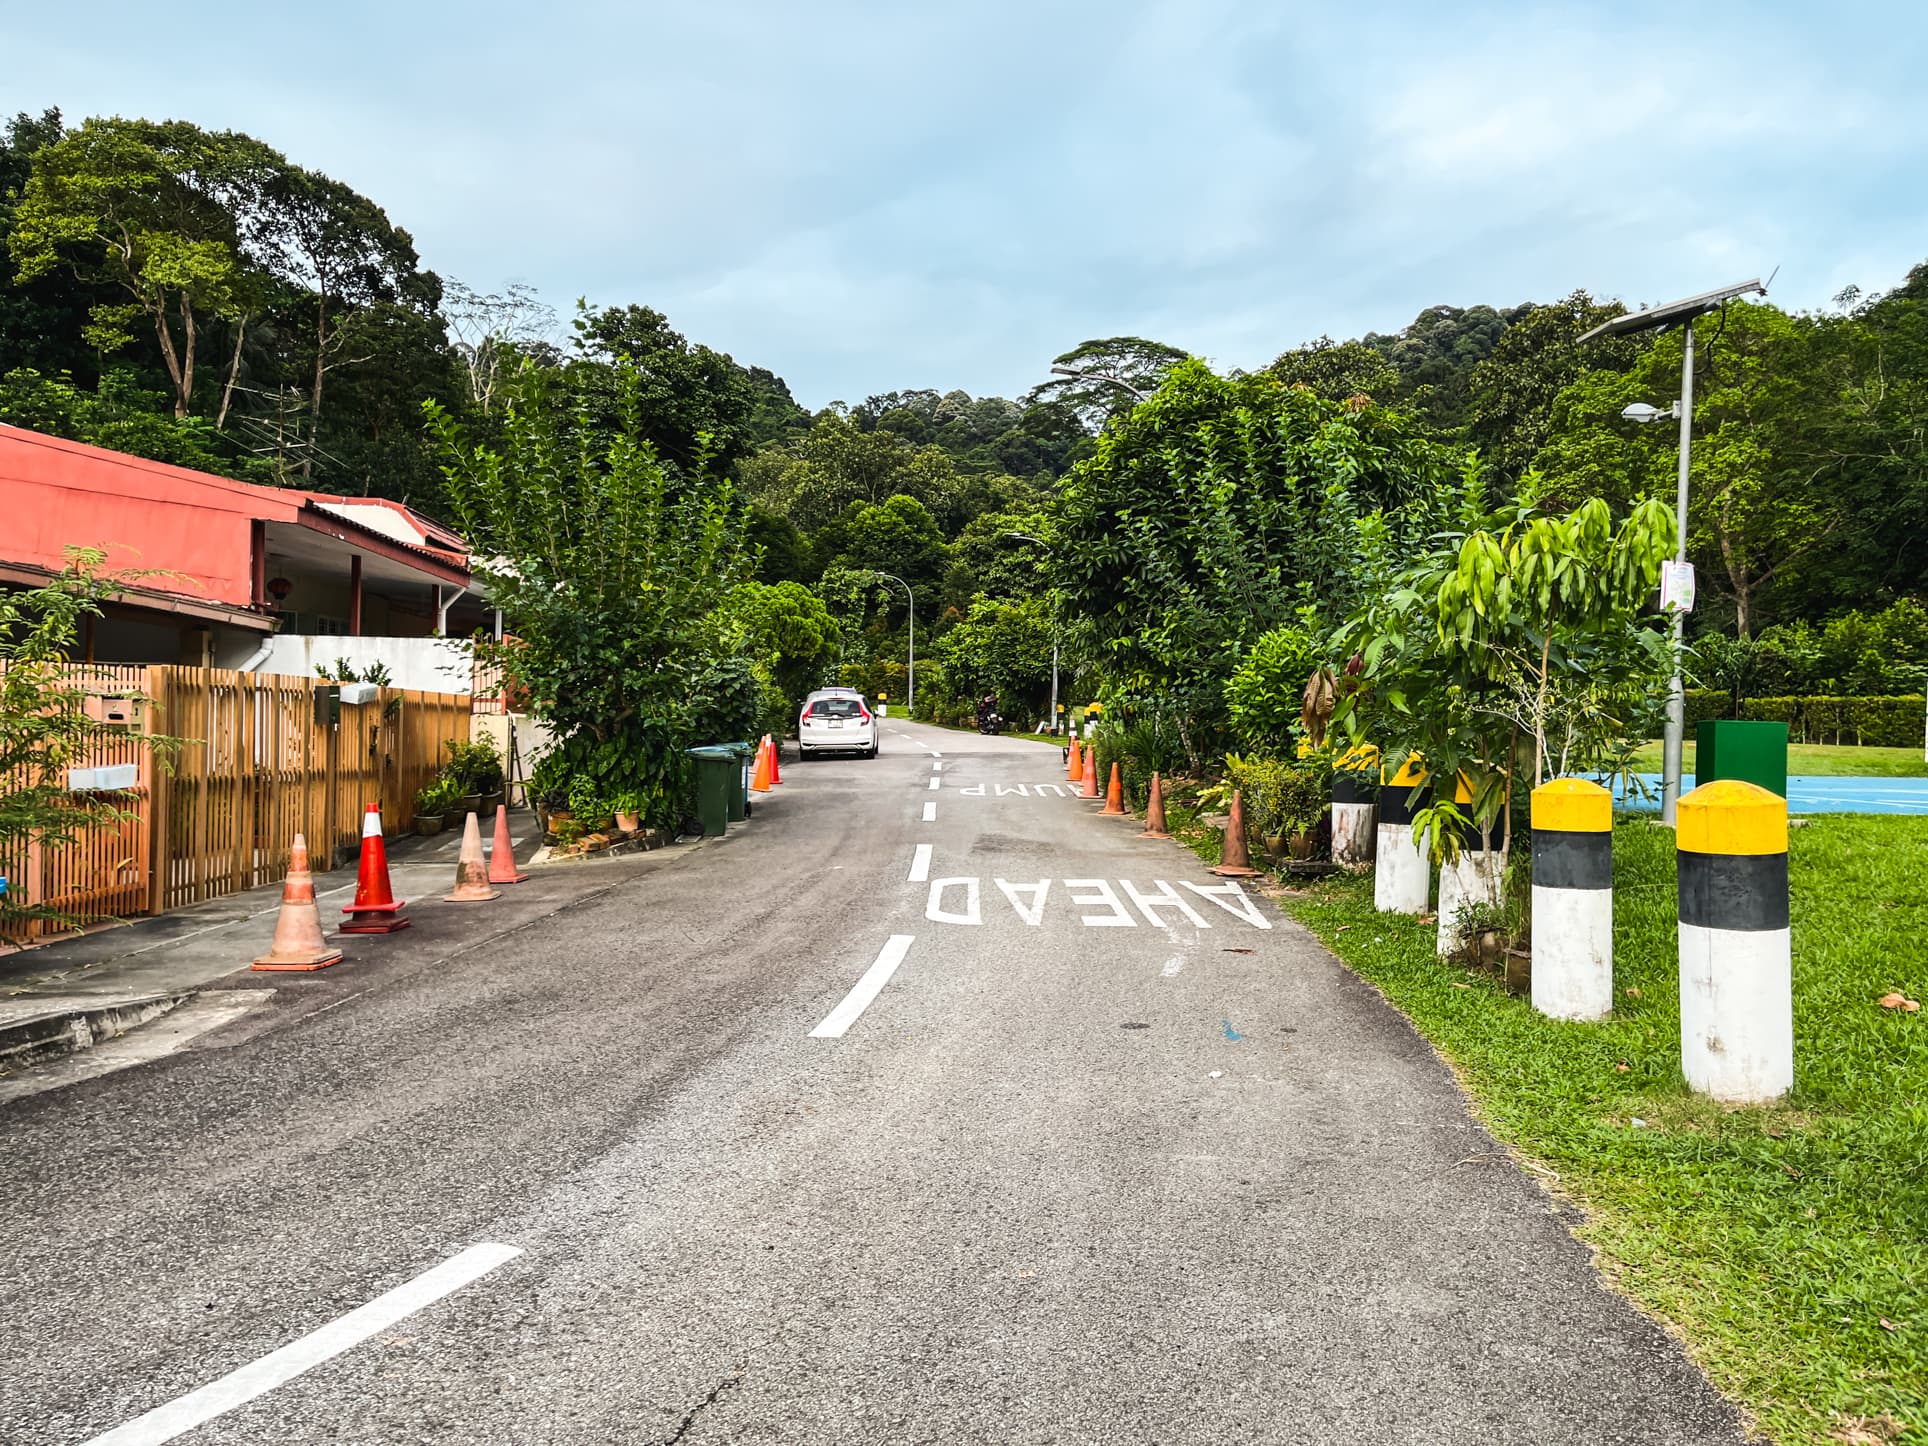 fuyong estate landed road 7